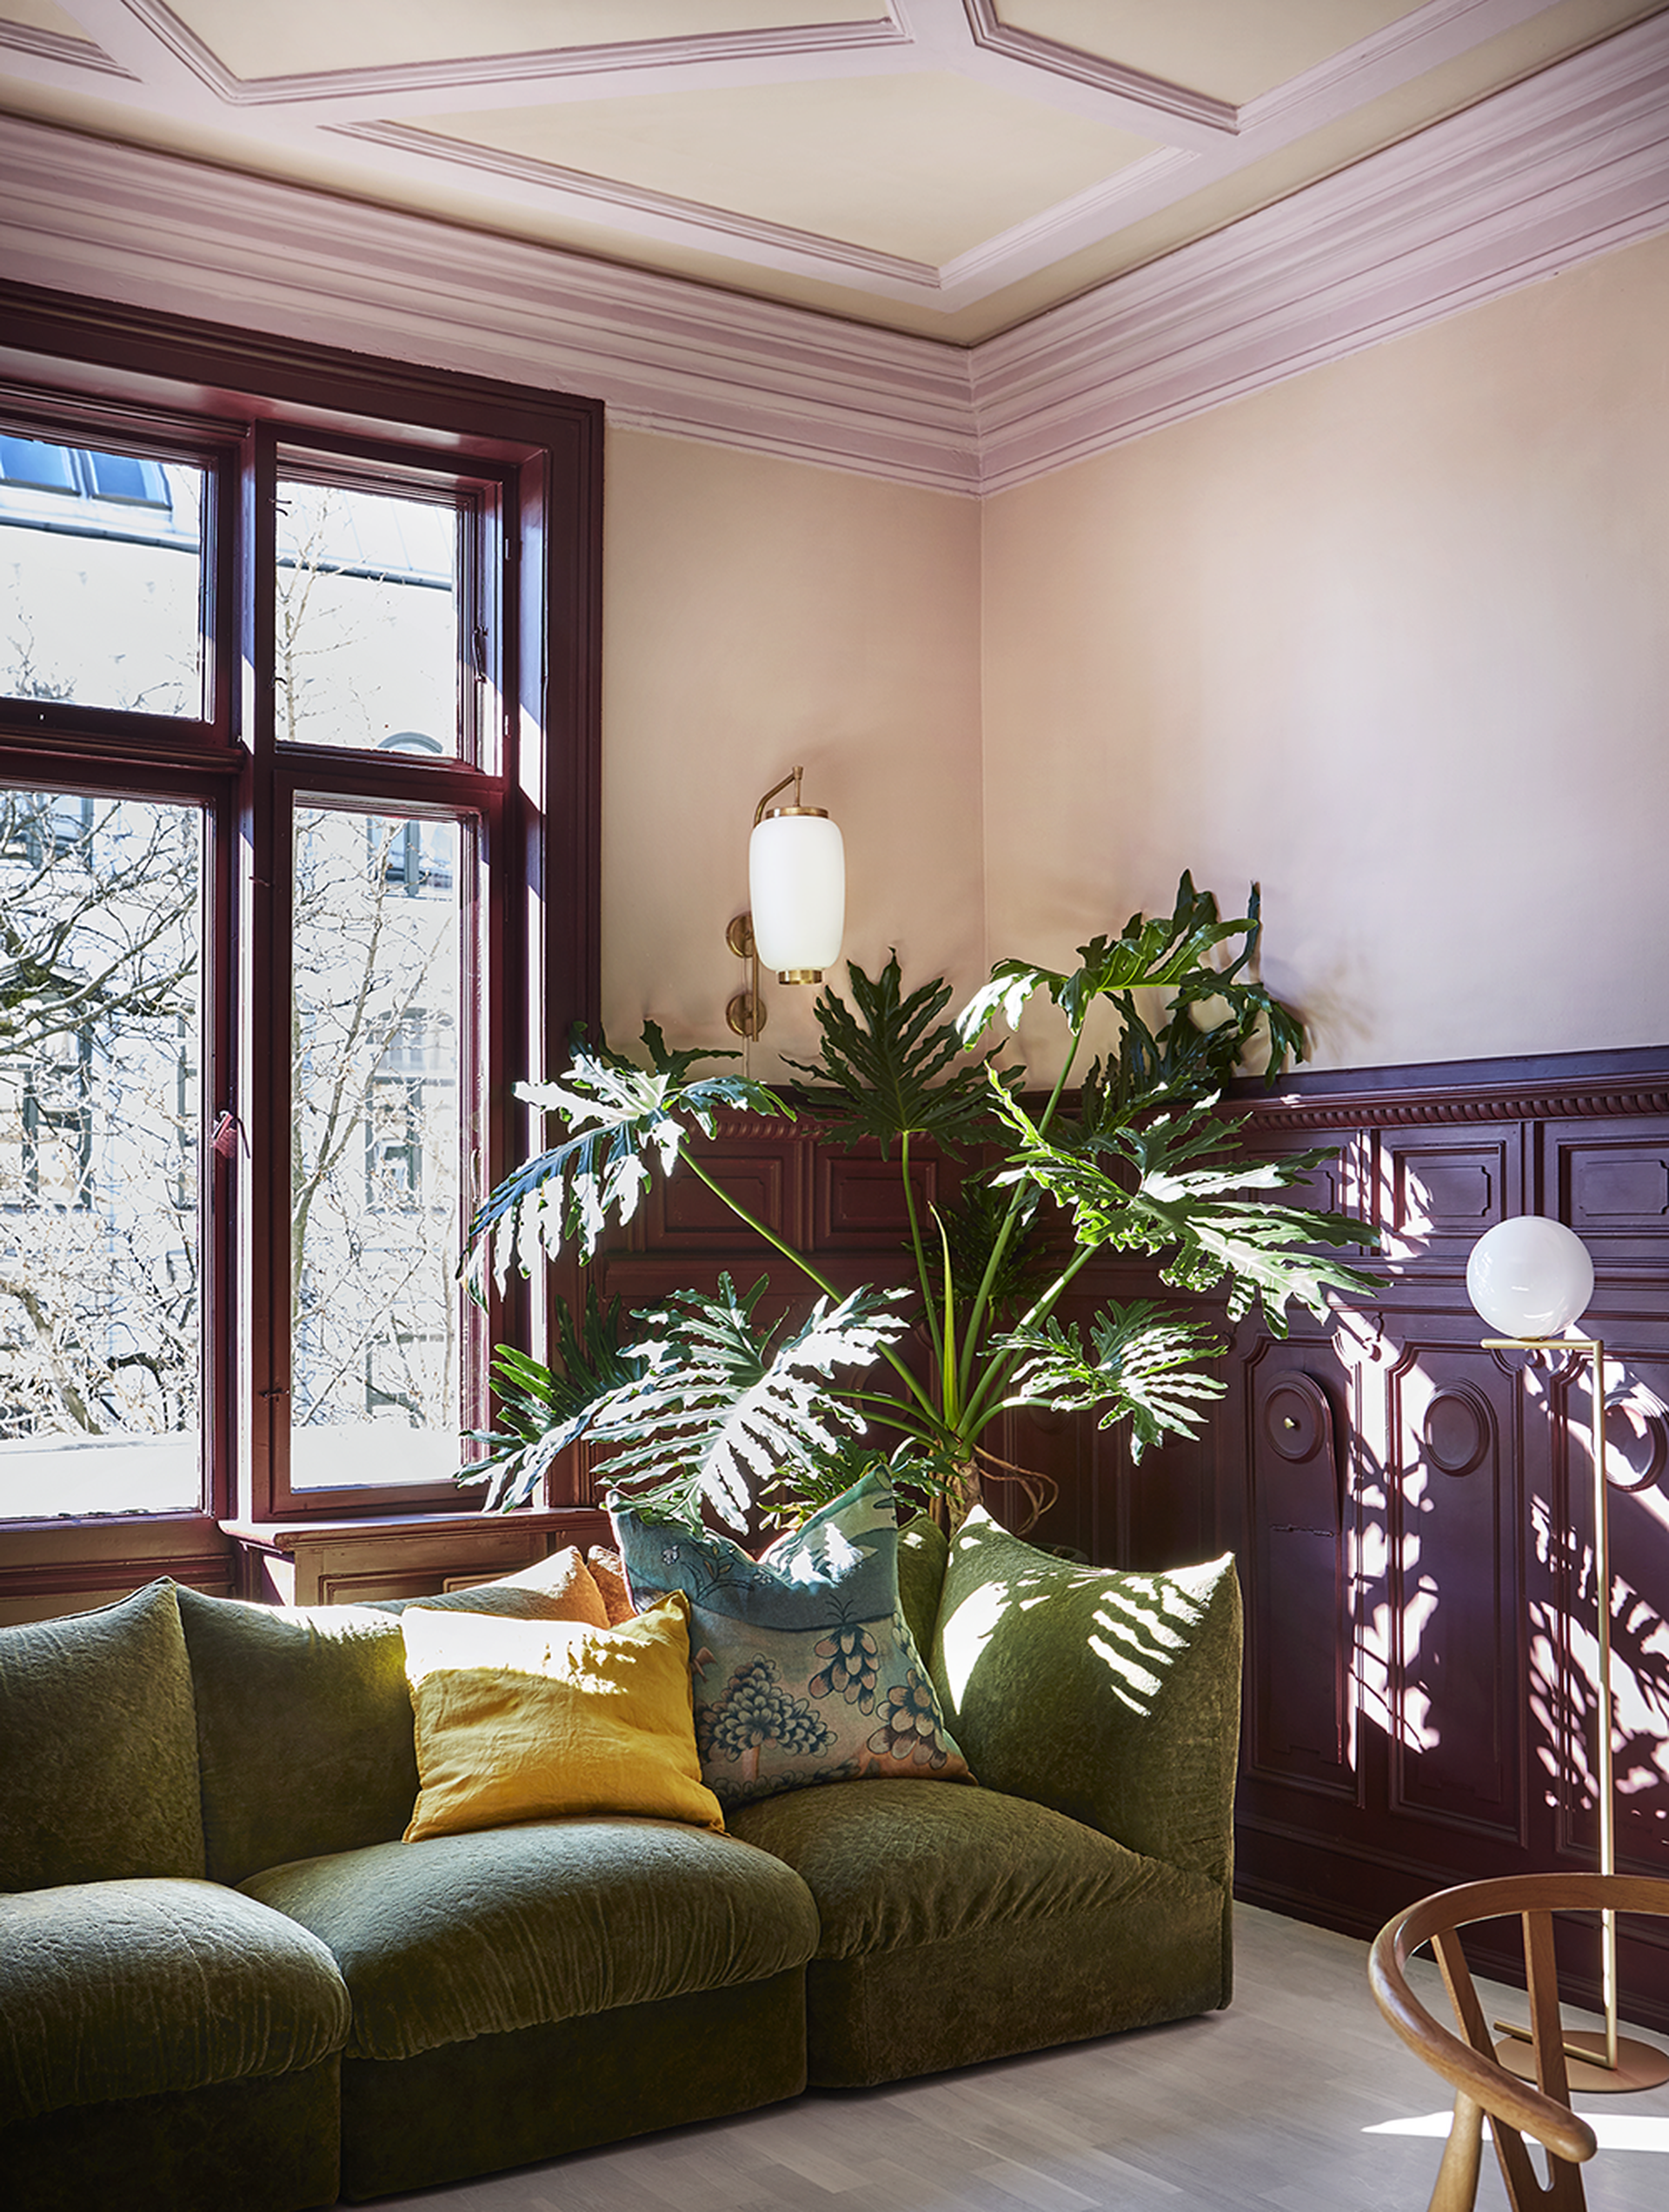 Stue med beige, rosa og lilla på vegger, tak og vinduskarm. Grønn sofa og stor grønnplante. Bilde.